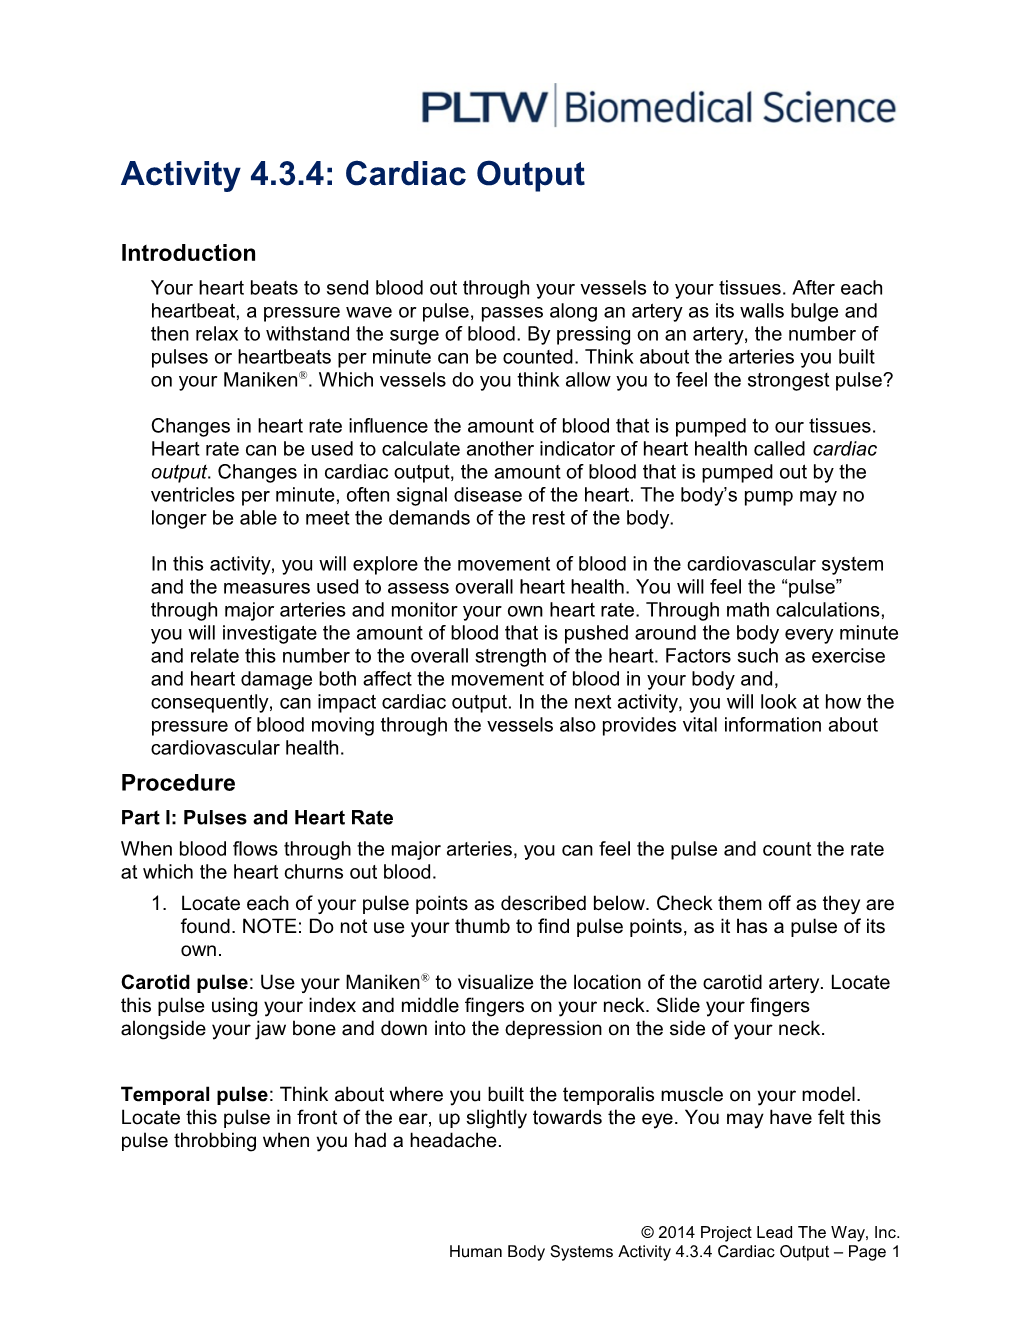 Activity 4.3.4: Cardiac Output